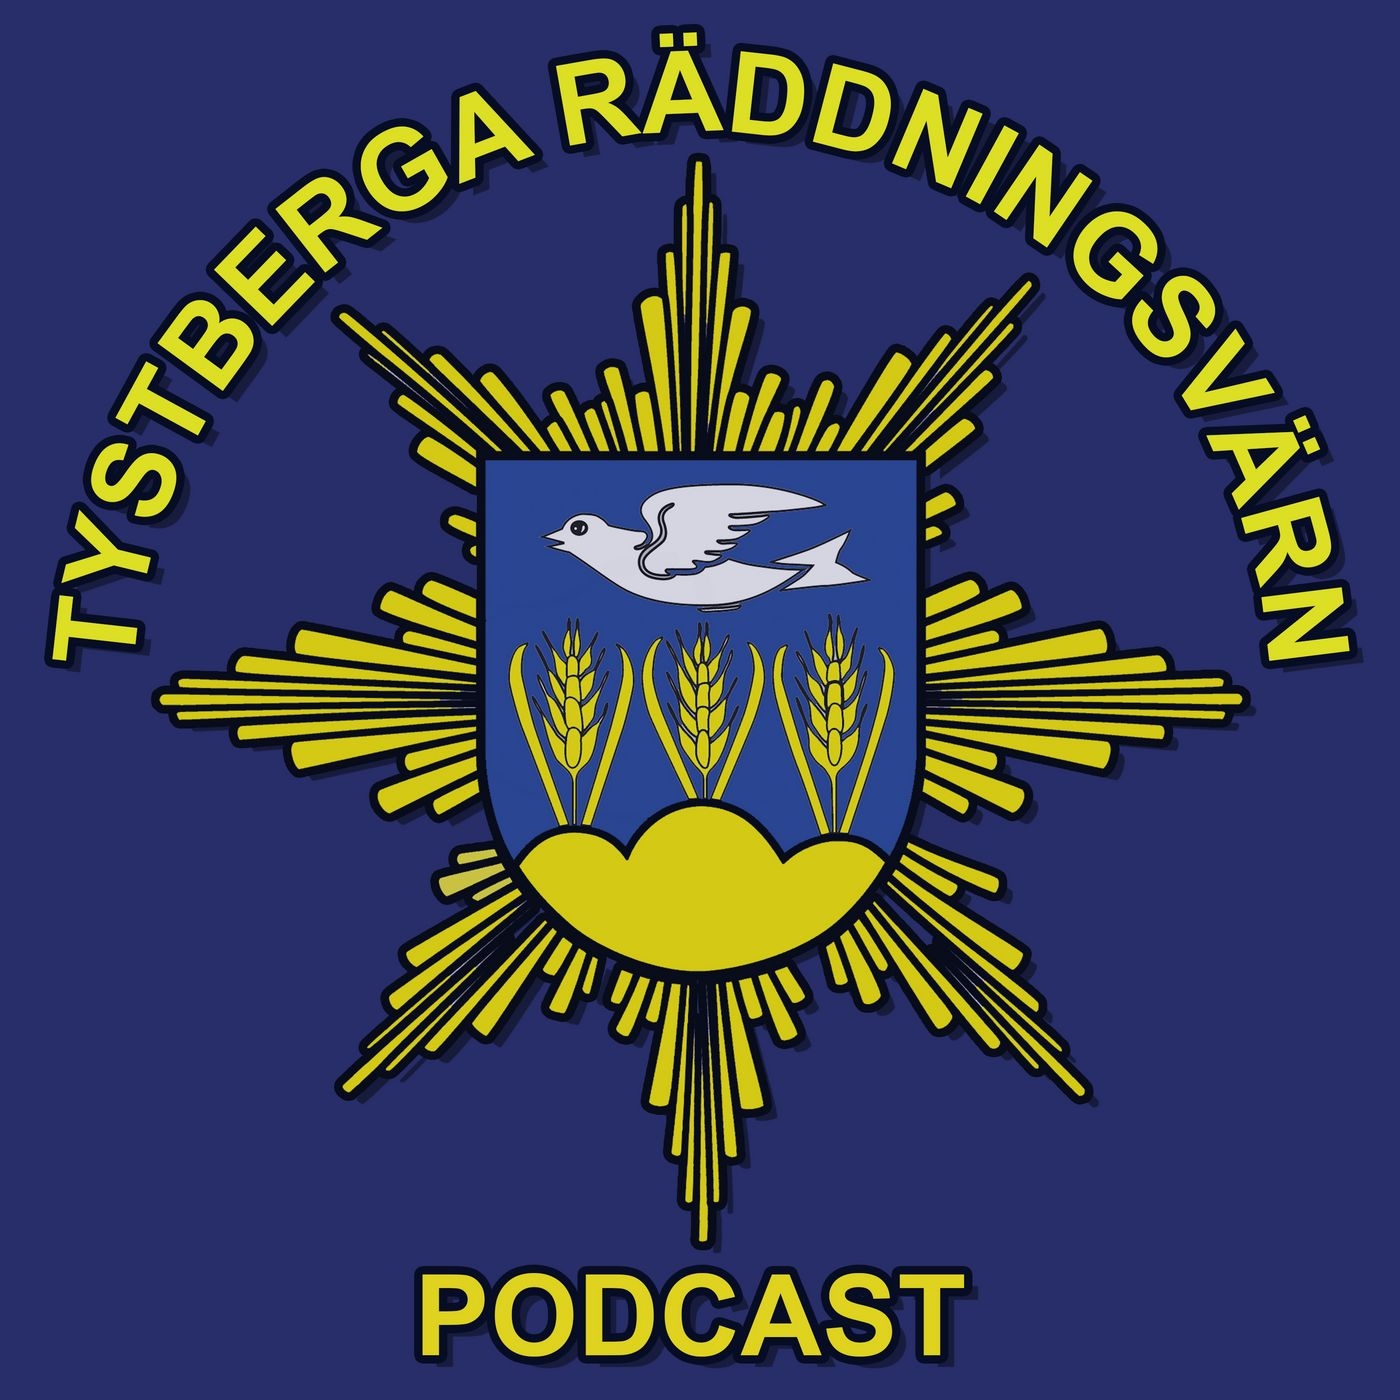 Tystberga Räddningsvärn Podcast